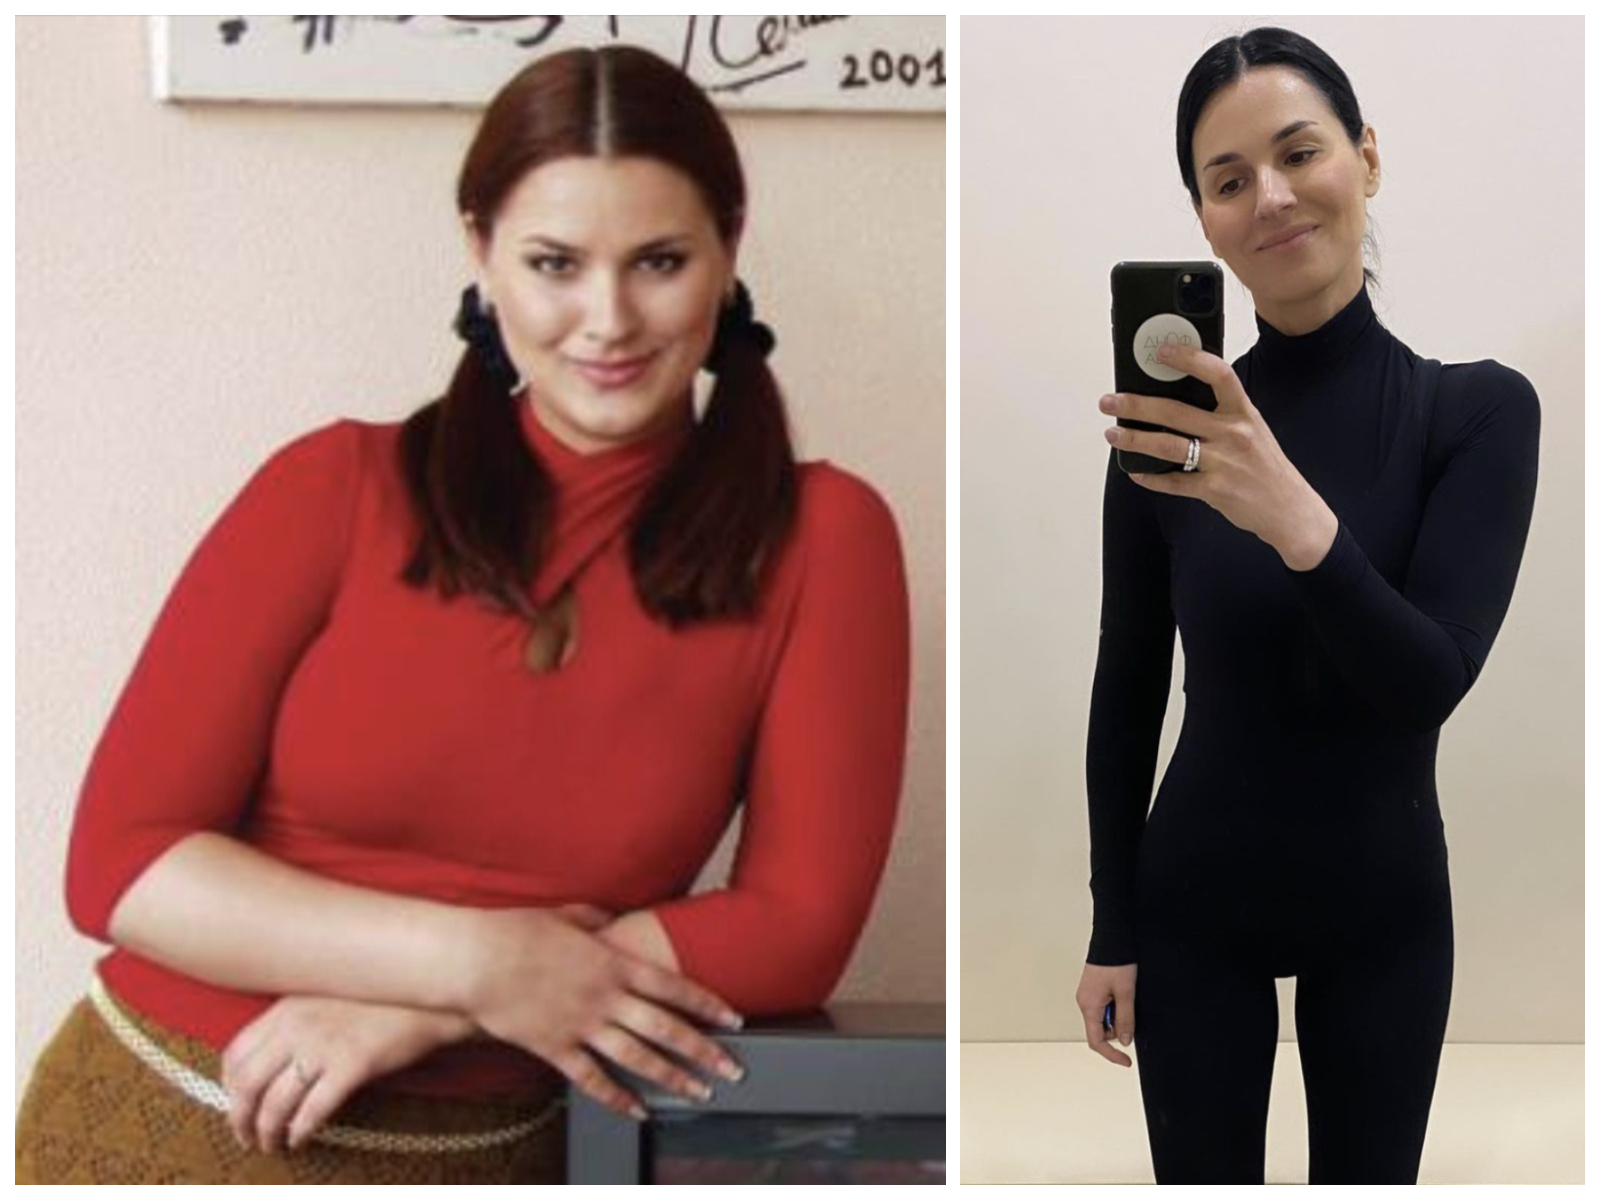 Підбірка фото «до» та «після» схуднення зірок: Маша Єфросиніна